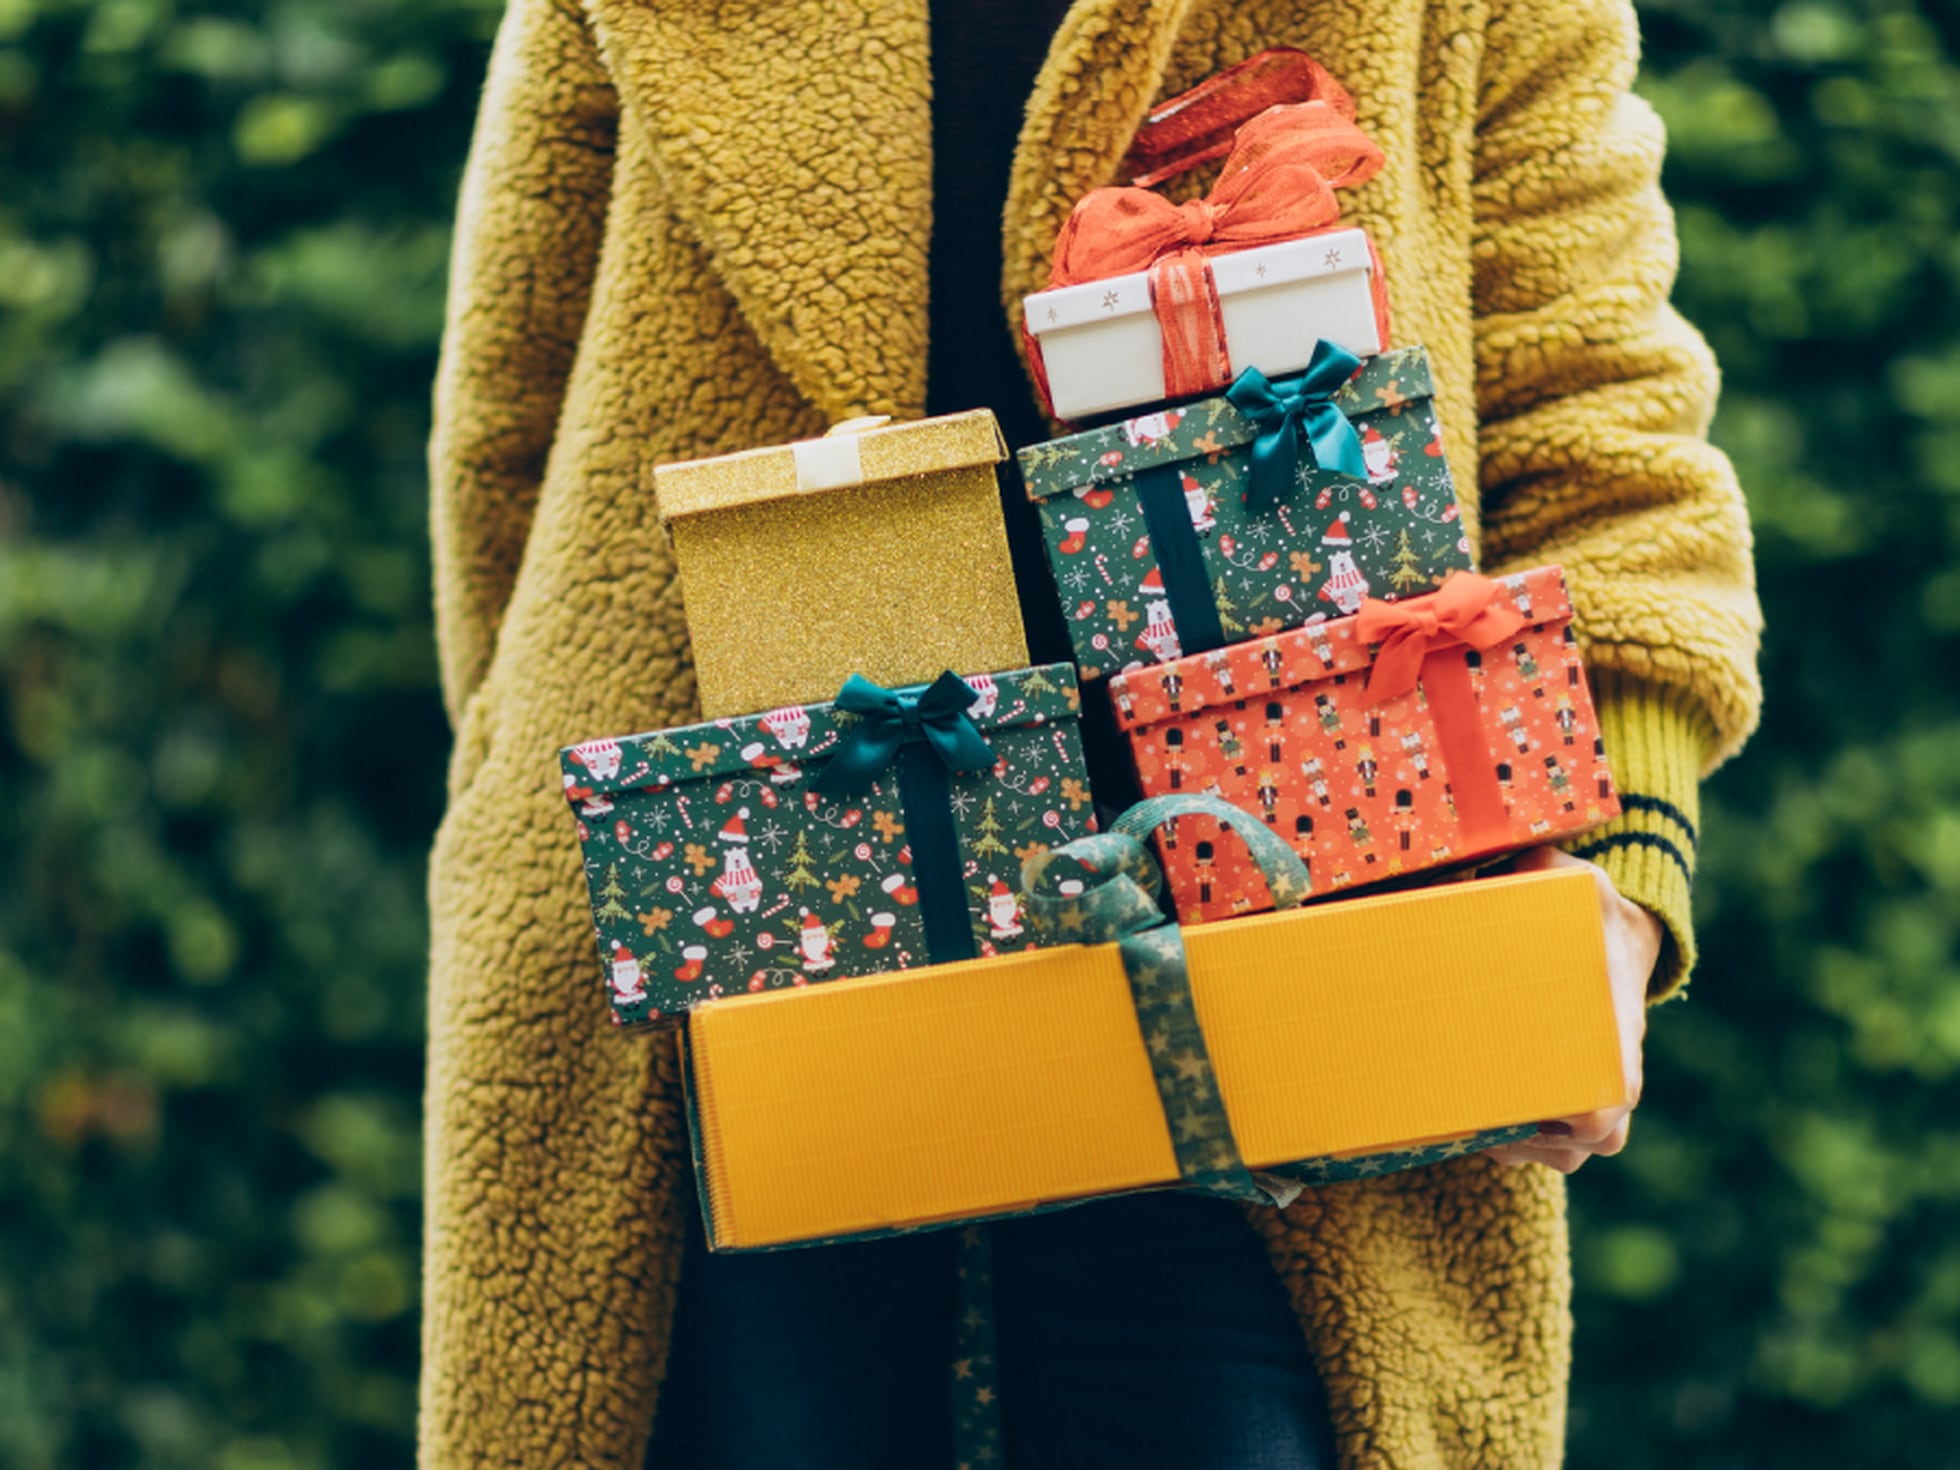 emparedado Silla margen Navidad: 20 ideas de regalos para distintos gustos, edades y presupuestos  que no superan los 40 euros | Escaparate: compras y ofertas | EL PAÍS